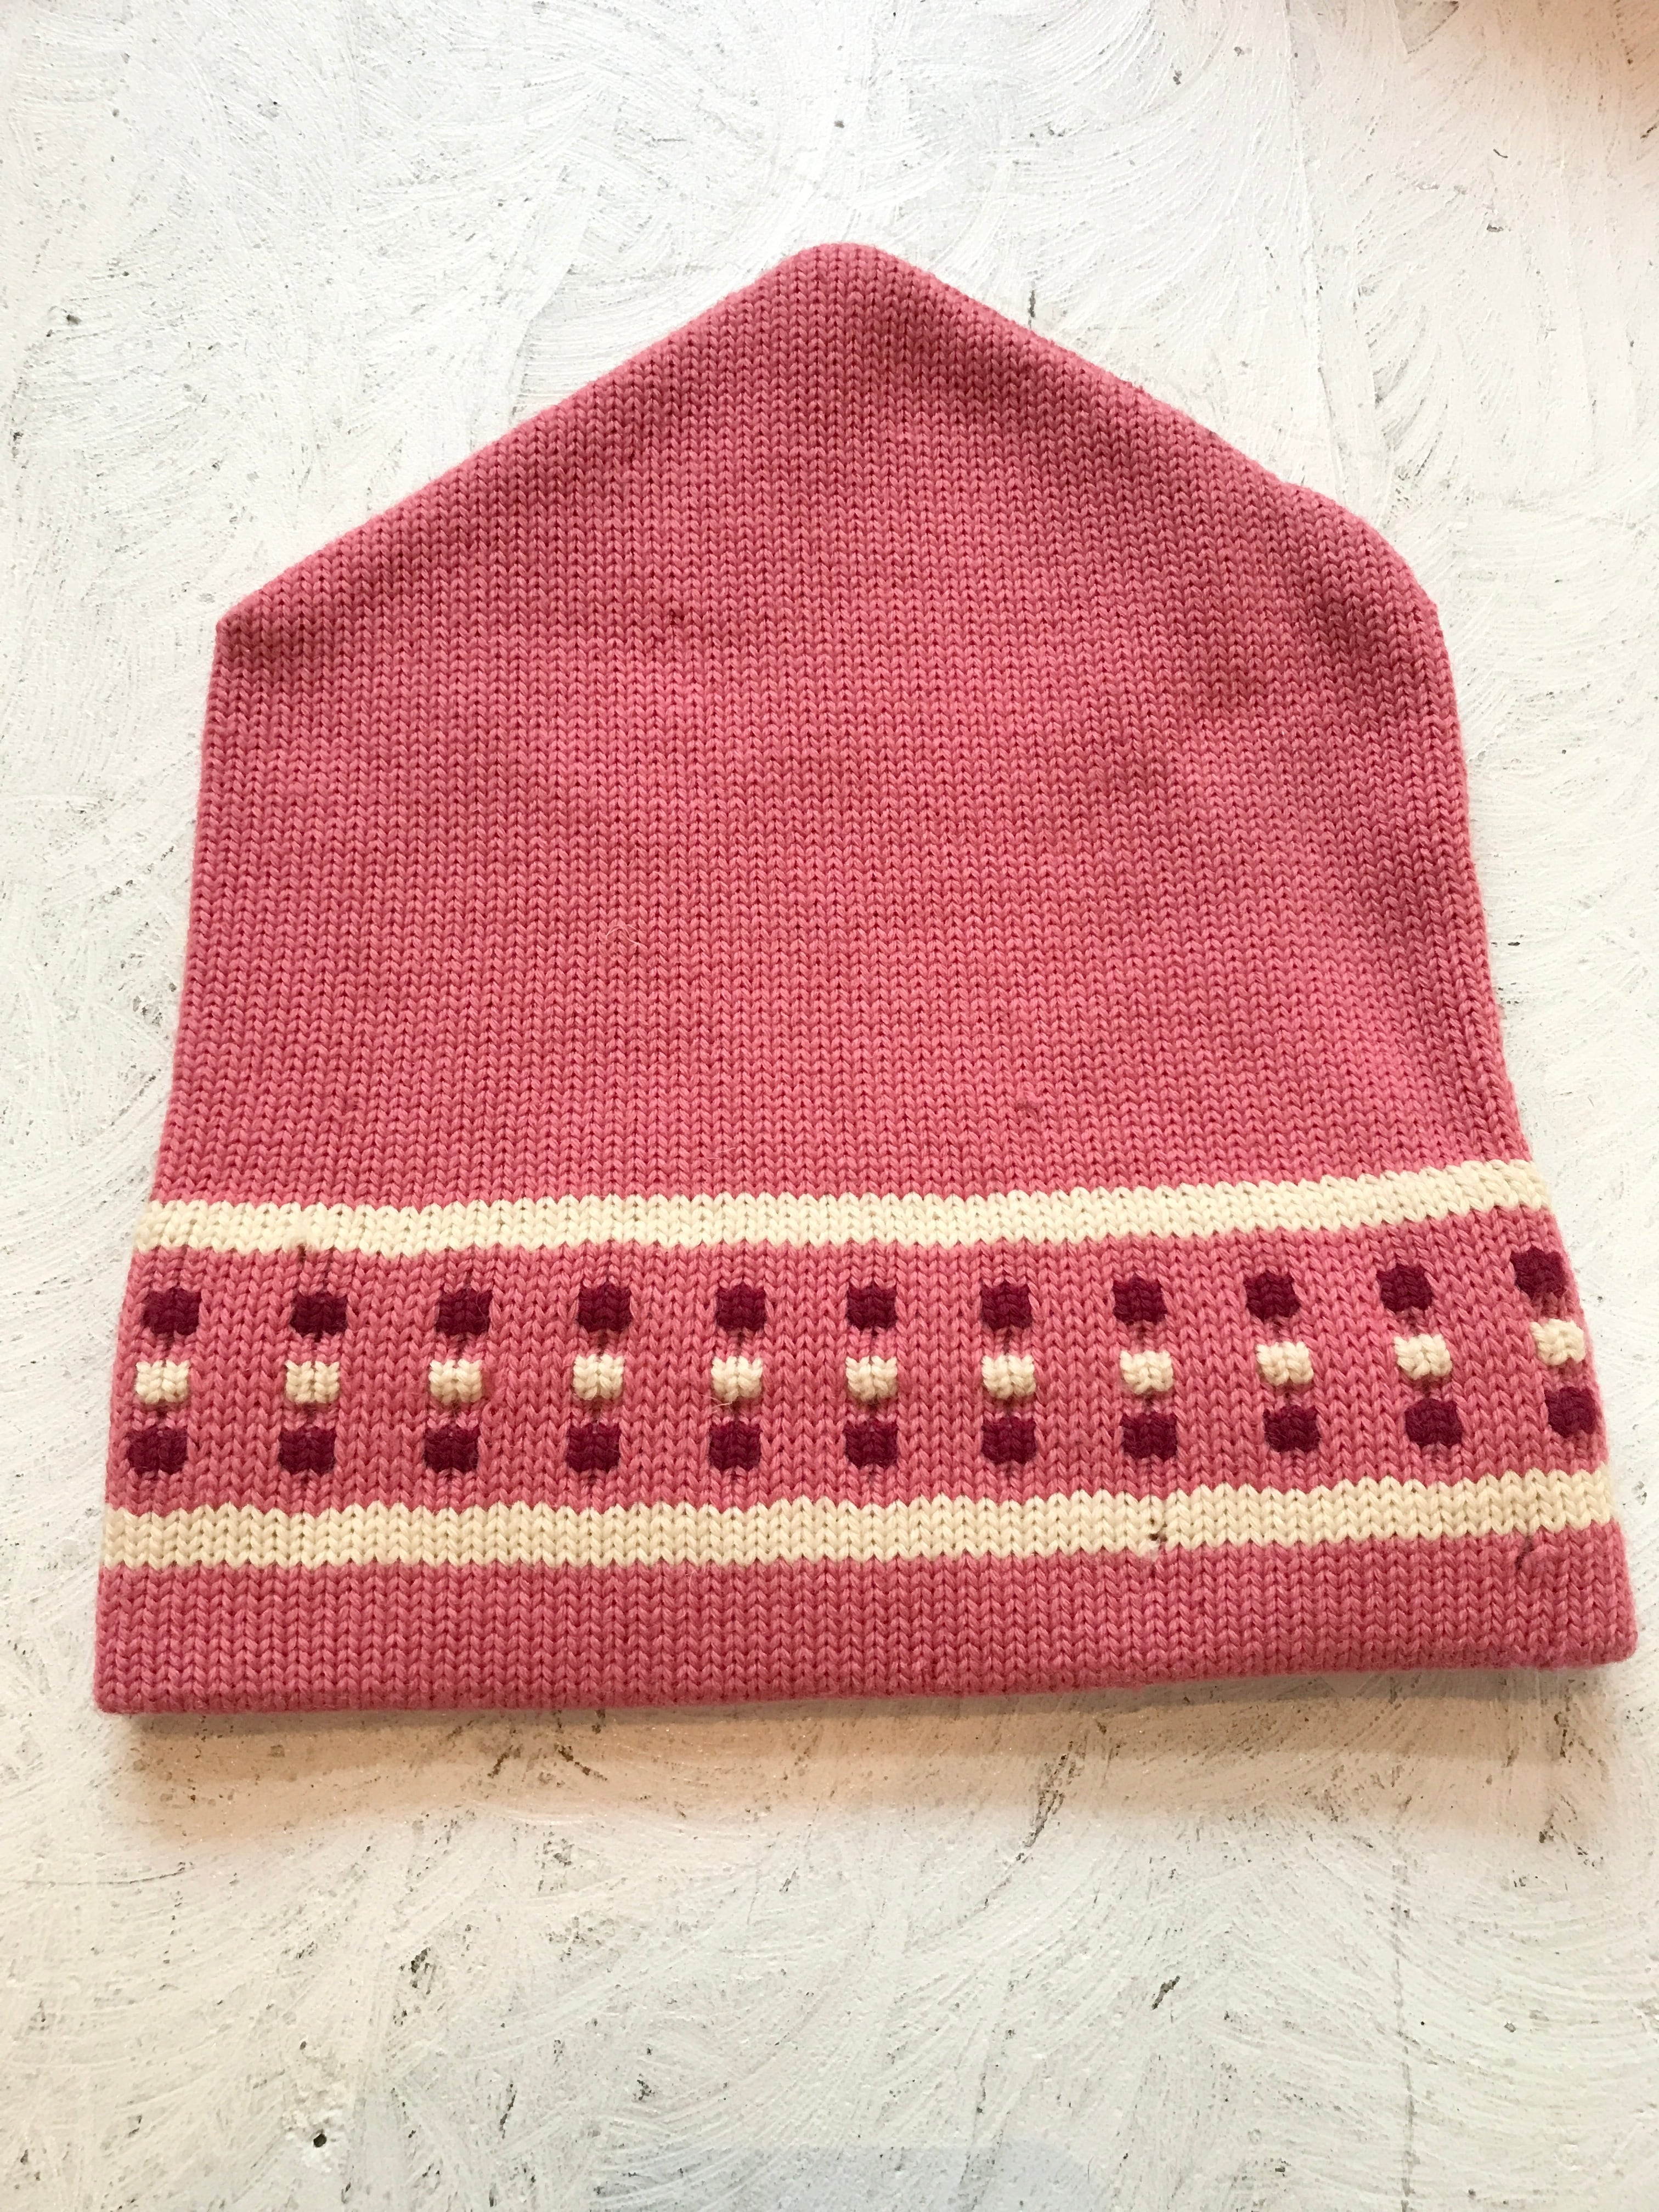 Vintage knit cap